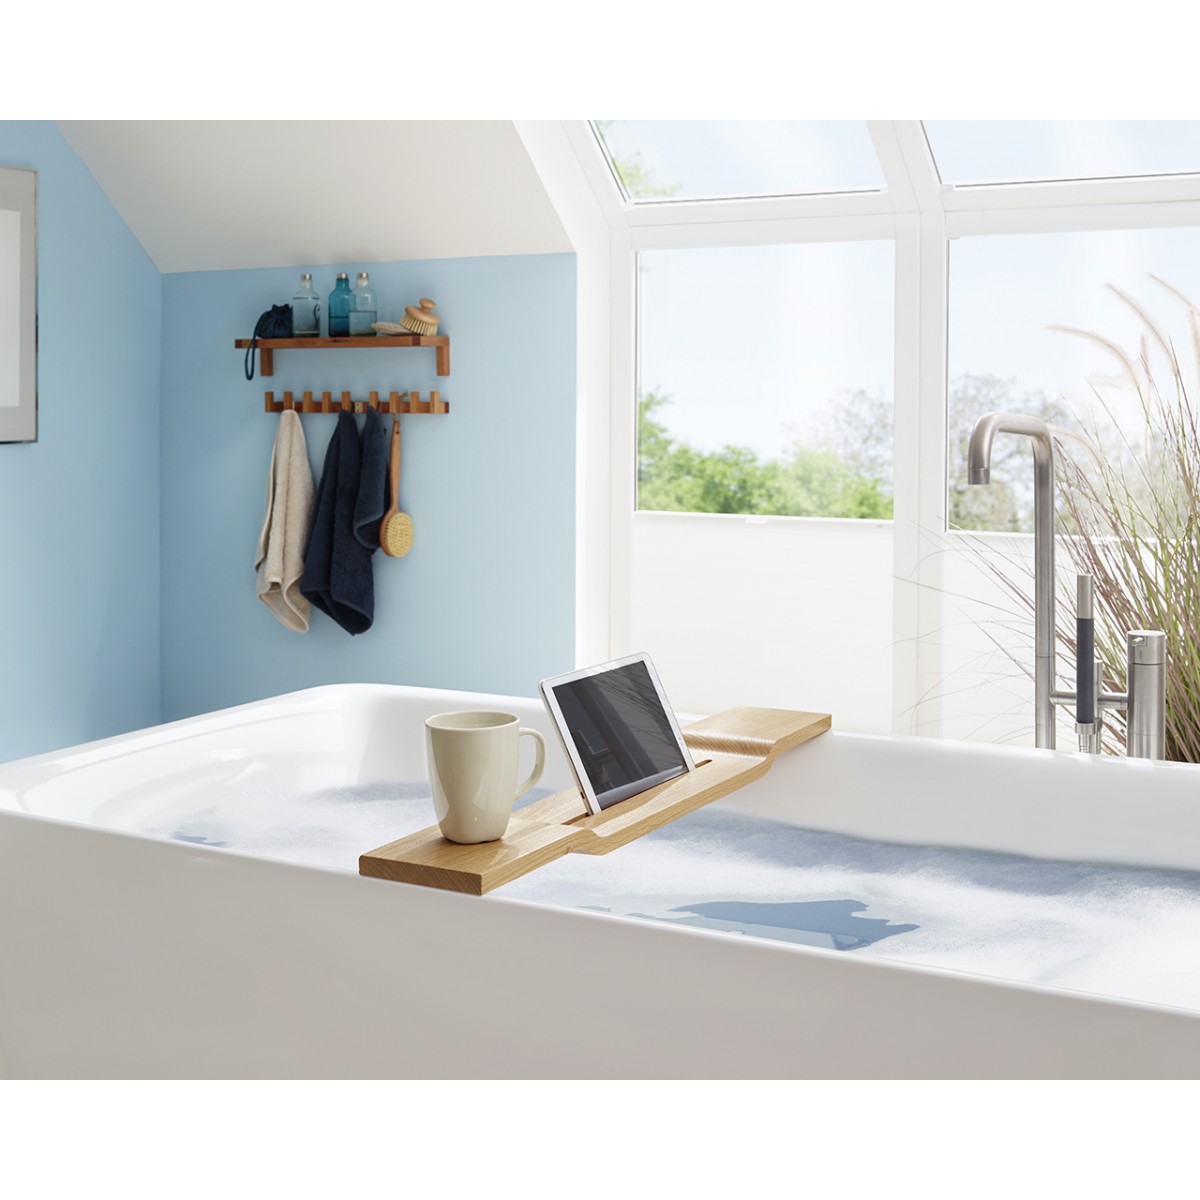 WOOD U? Halterung für iPad und Tablet für die Badewanne - iPad 2,3 und 4